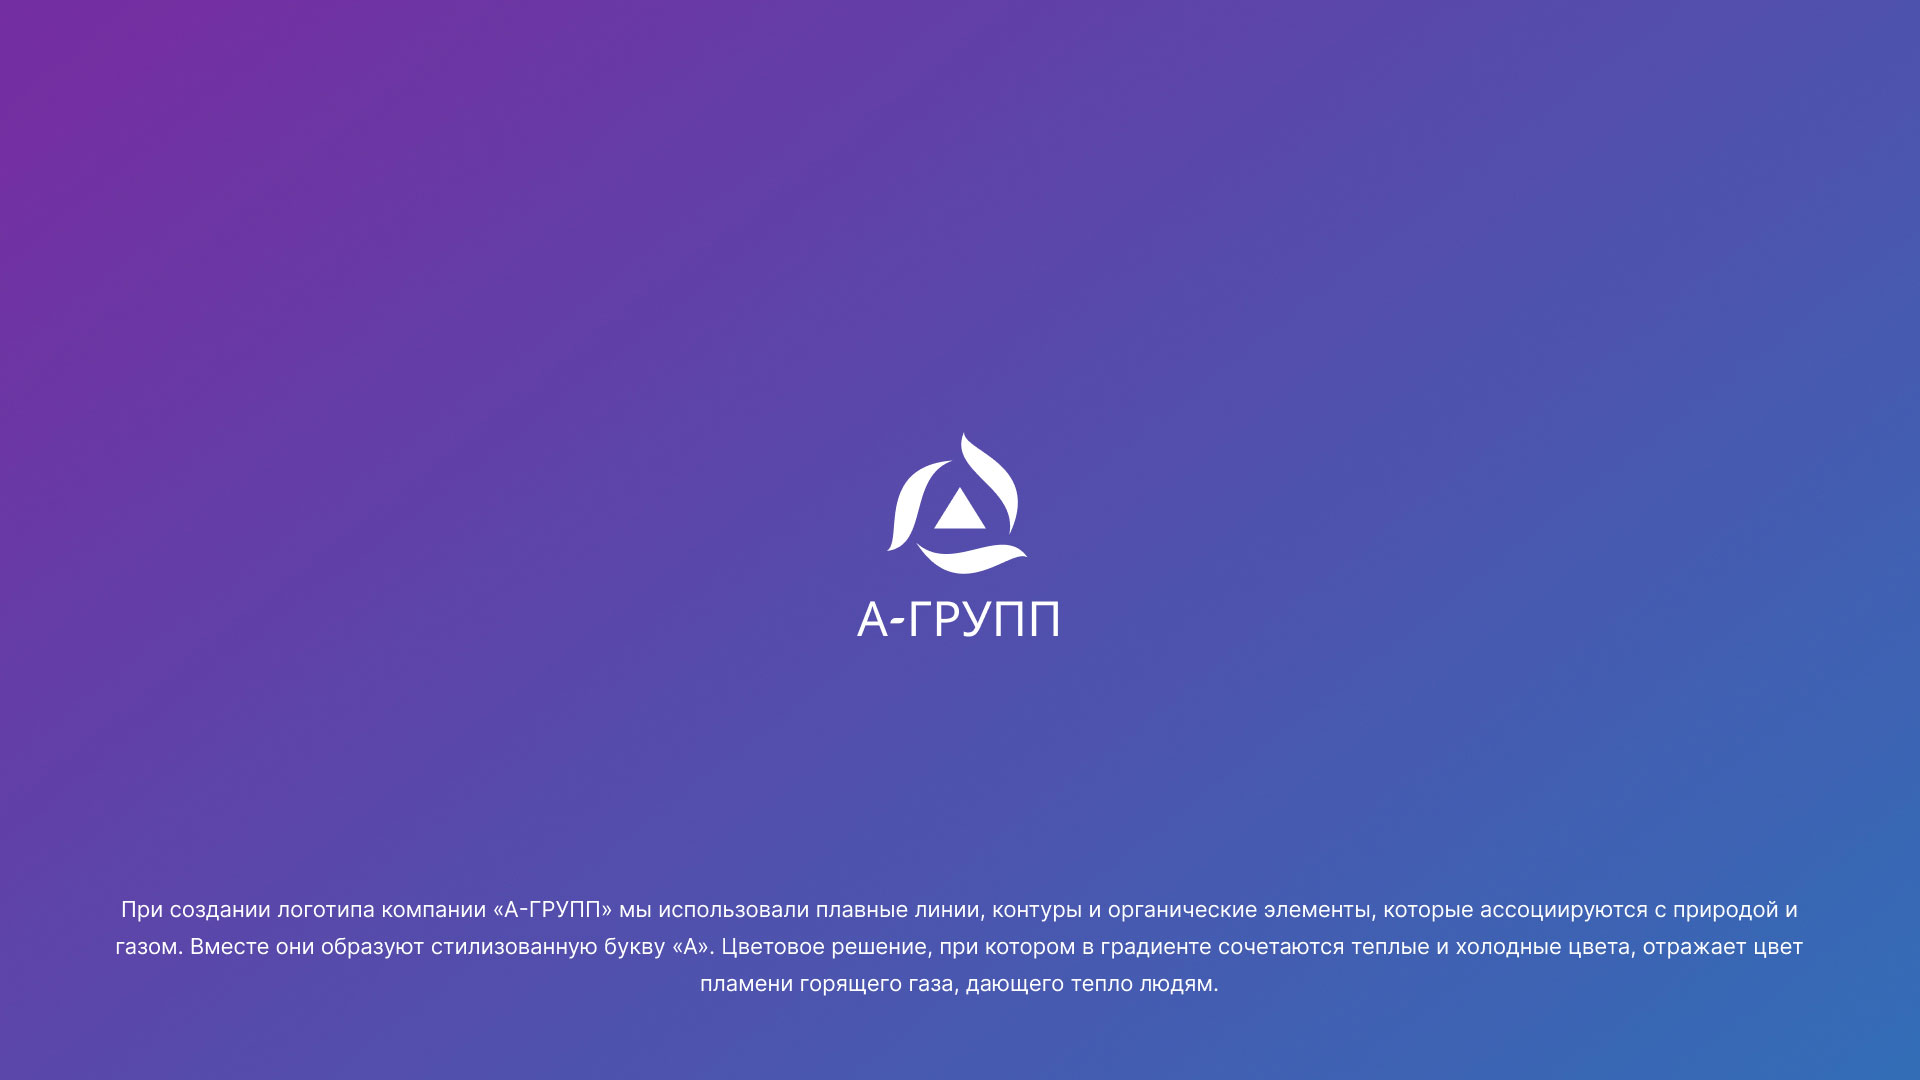 Создание логотипа компании «А-ГРУПП» в 